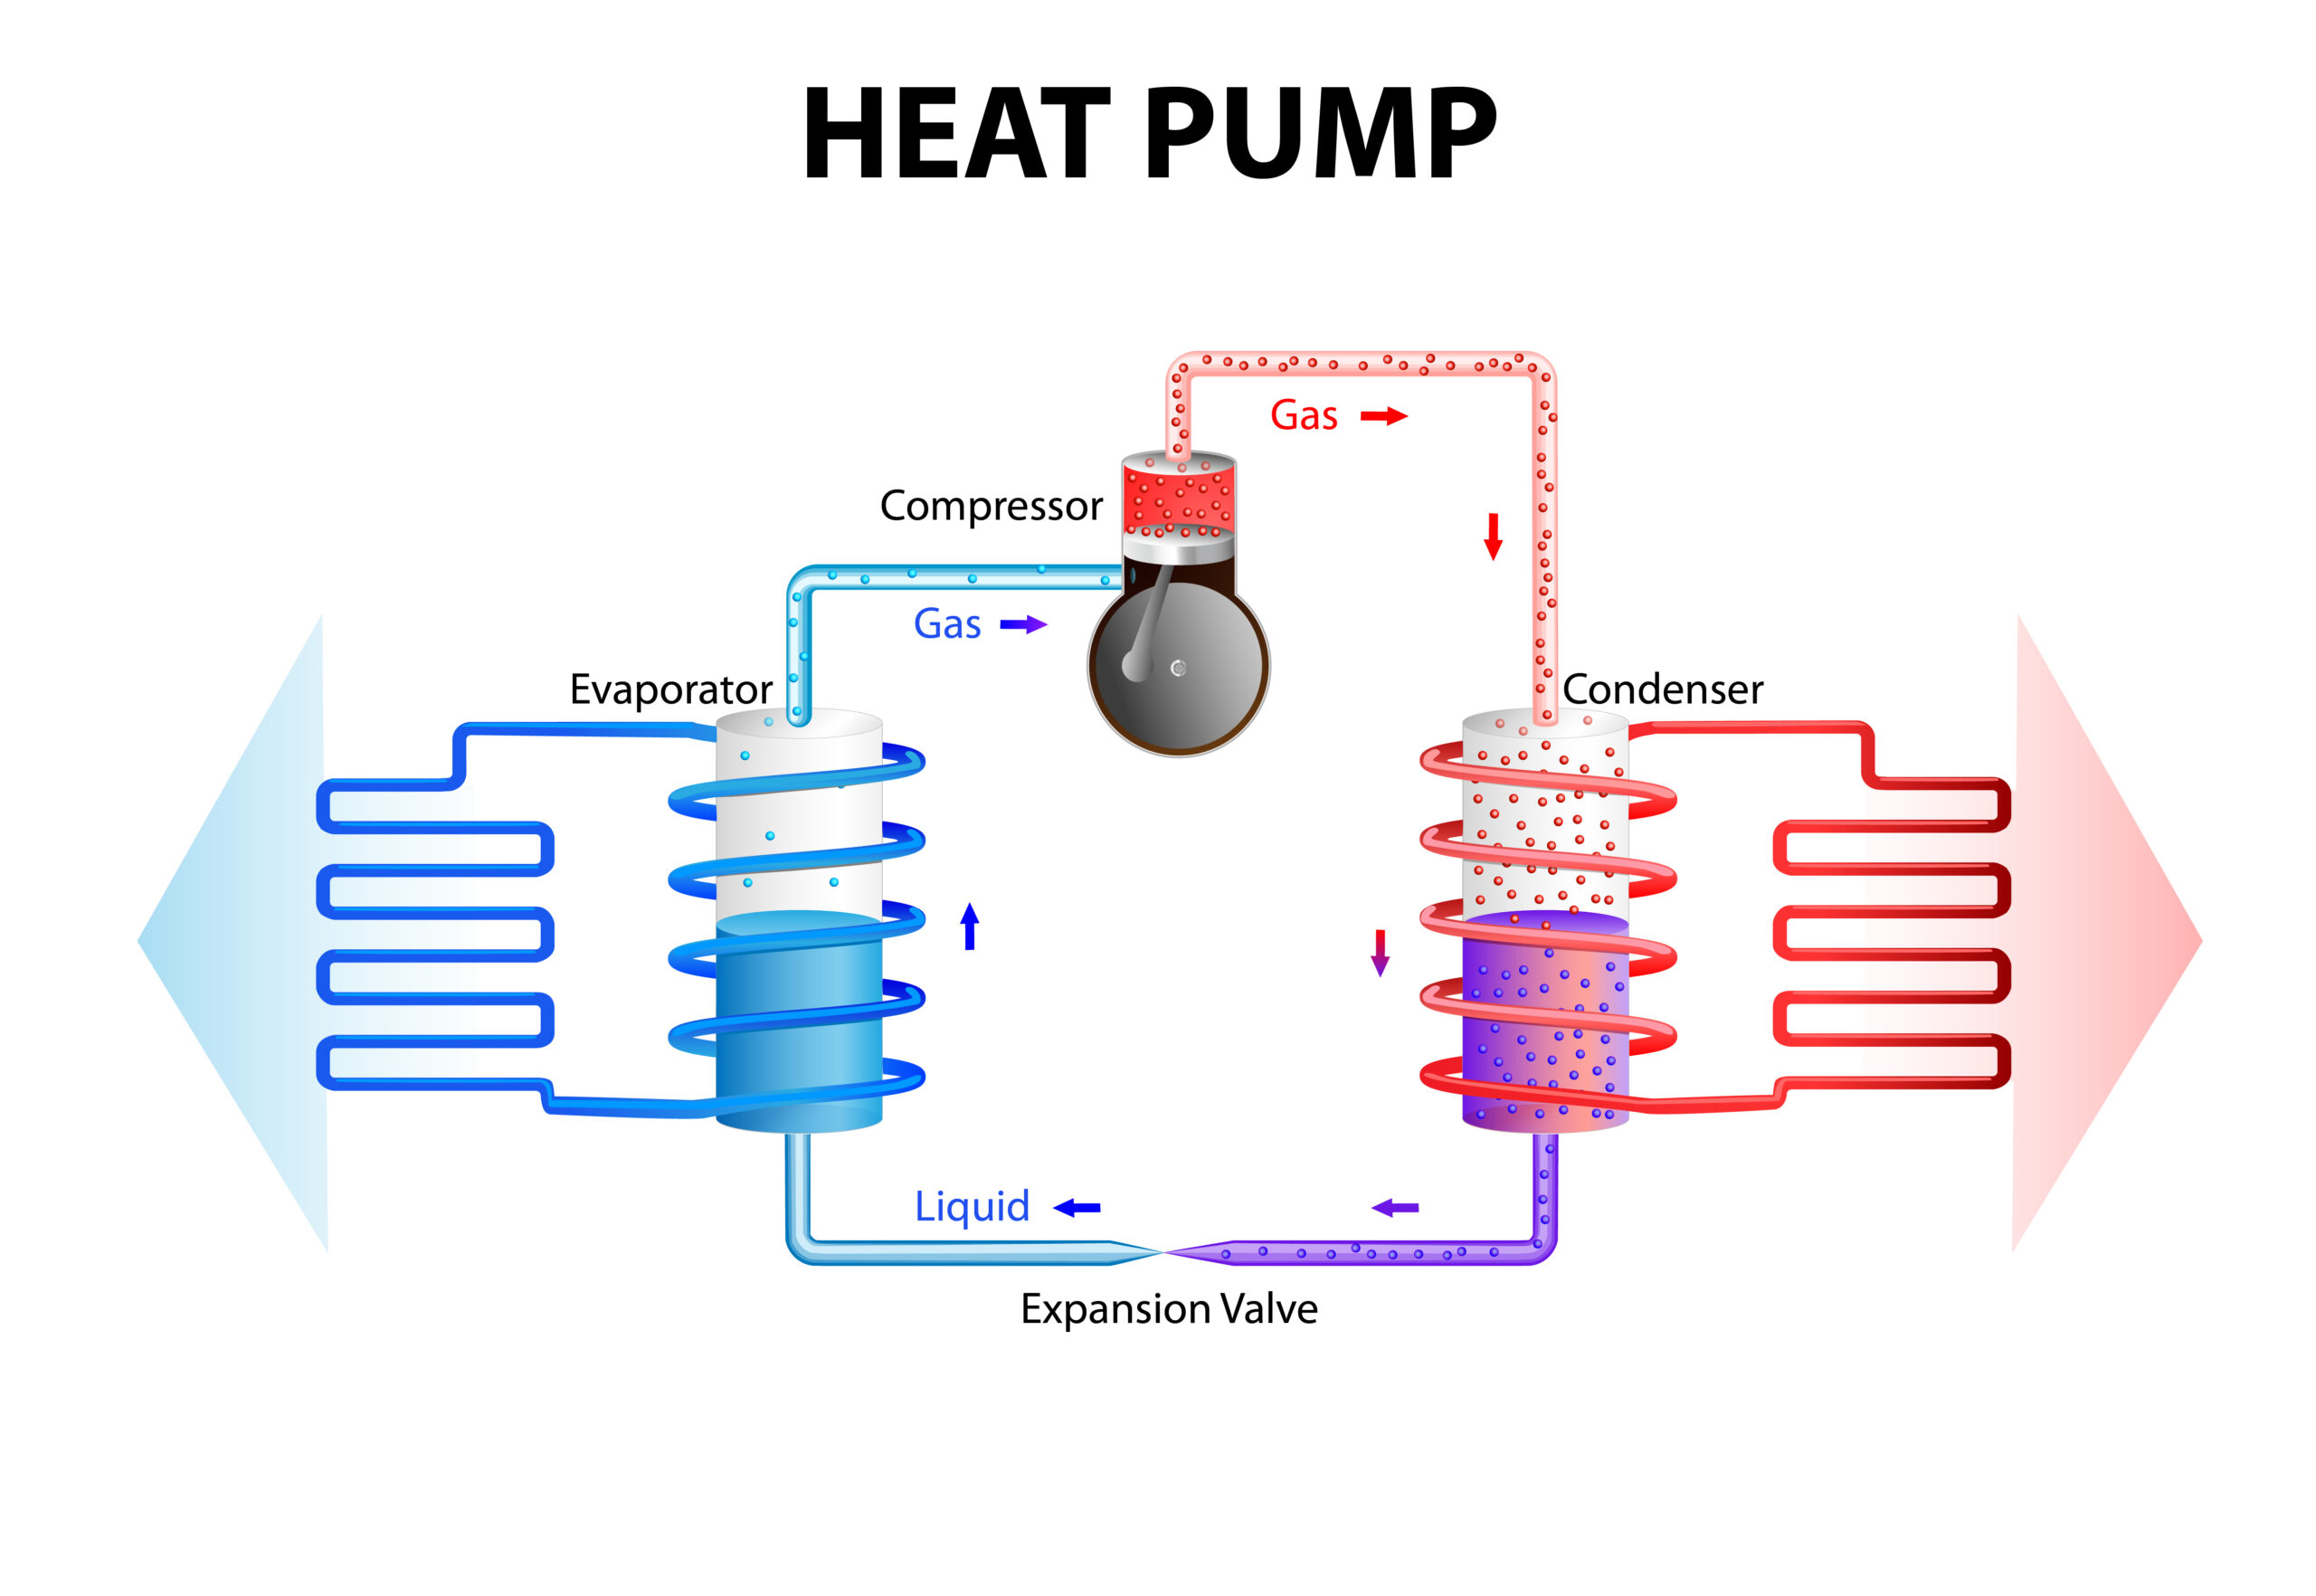 Heat pumps